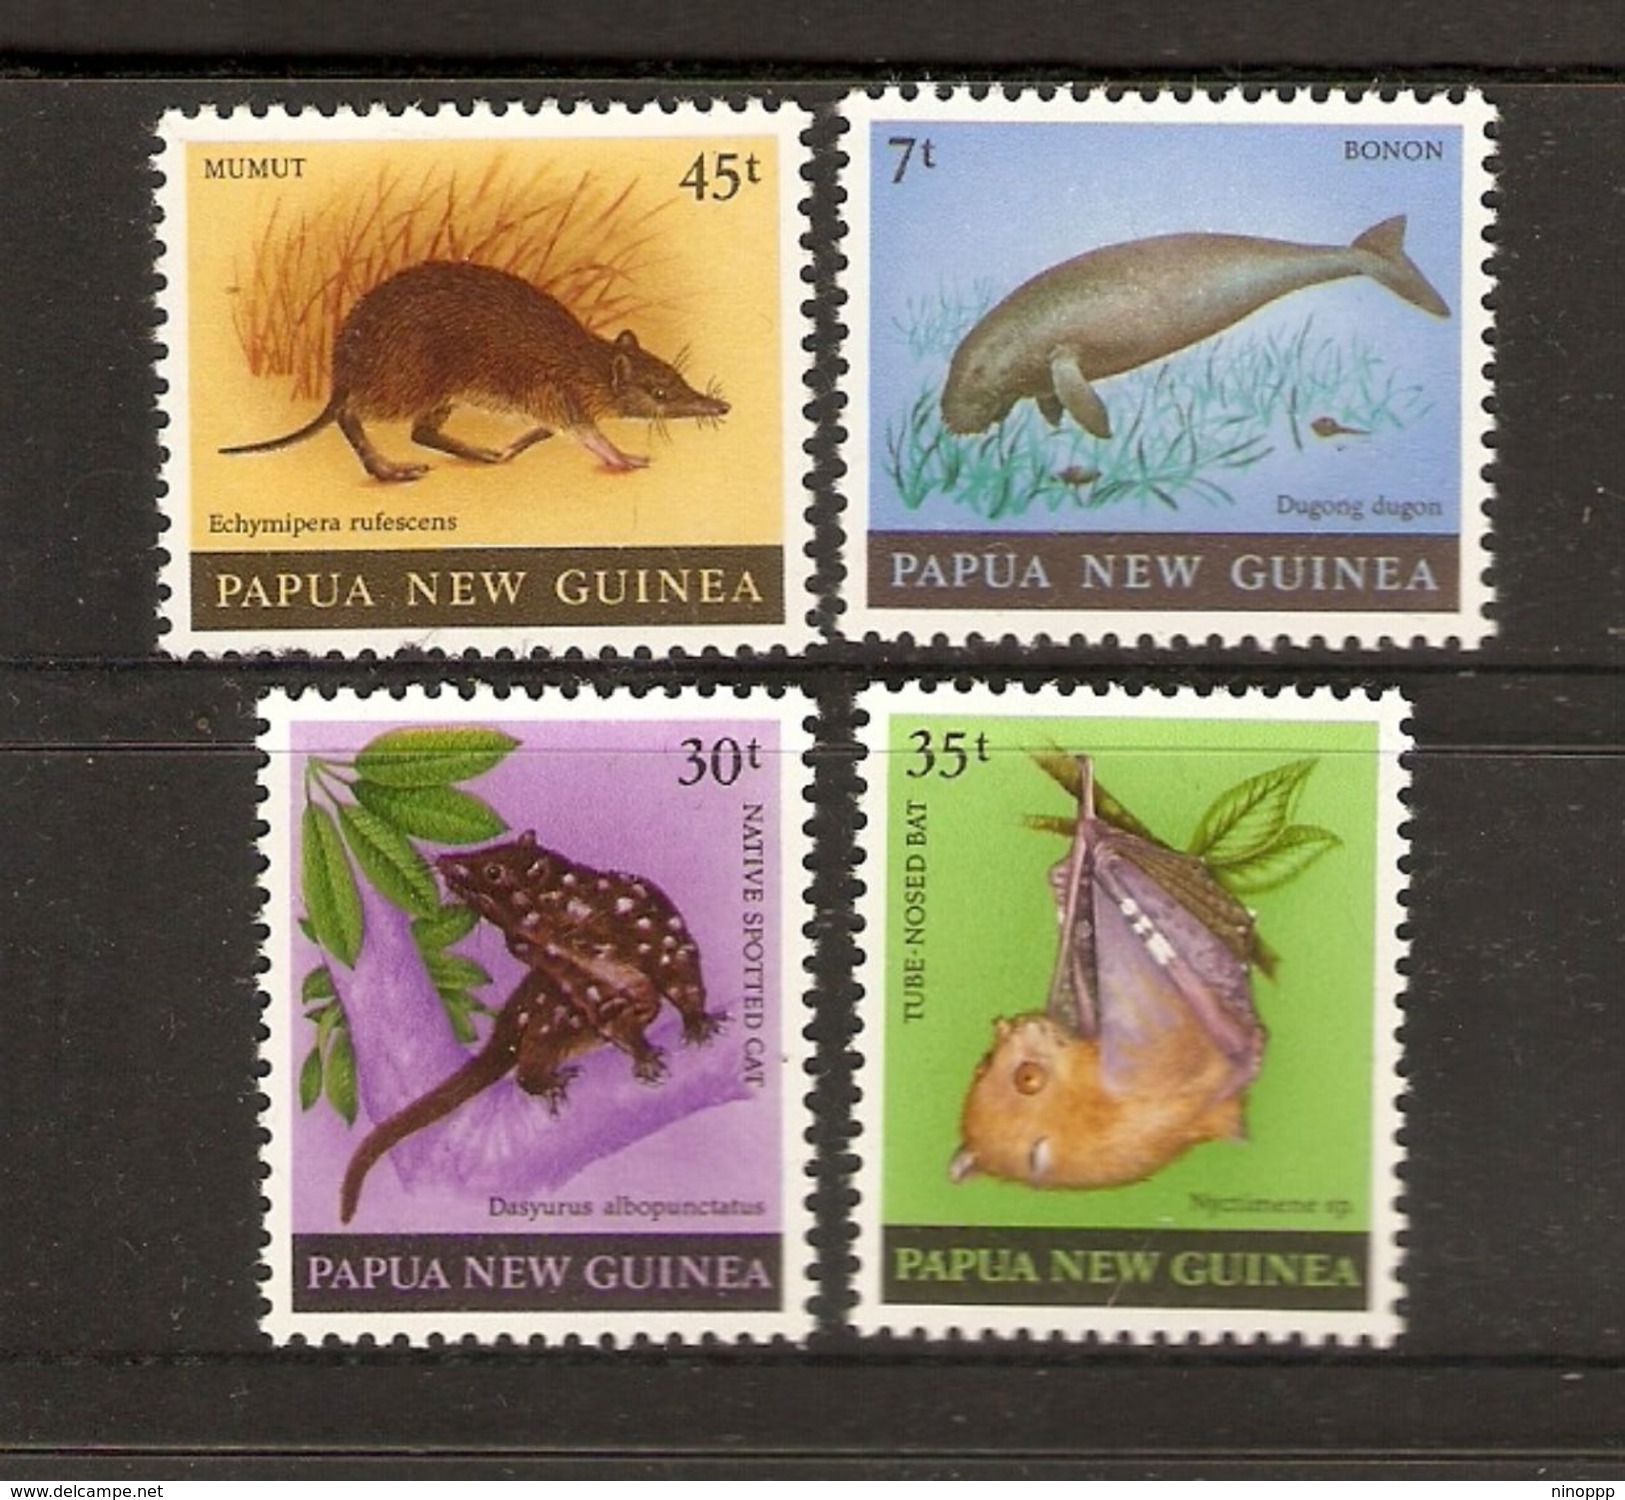 Papua New Guinea SG 397-380 1980 Mammals MNH - Papua New Guinea